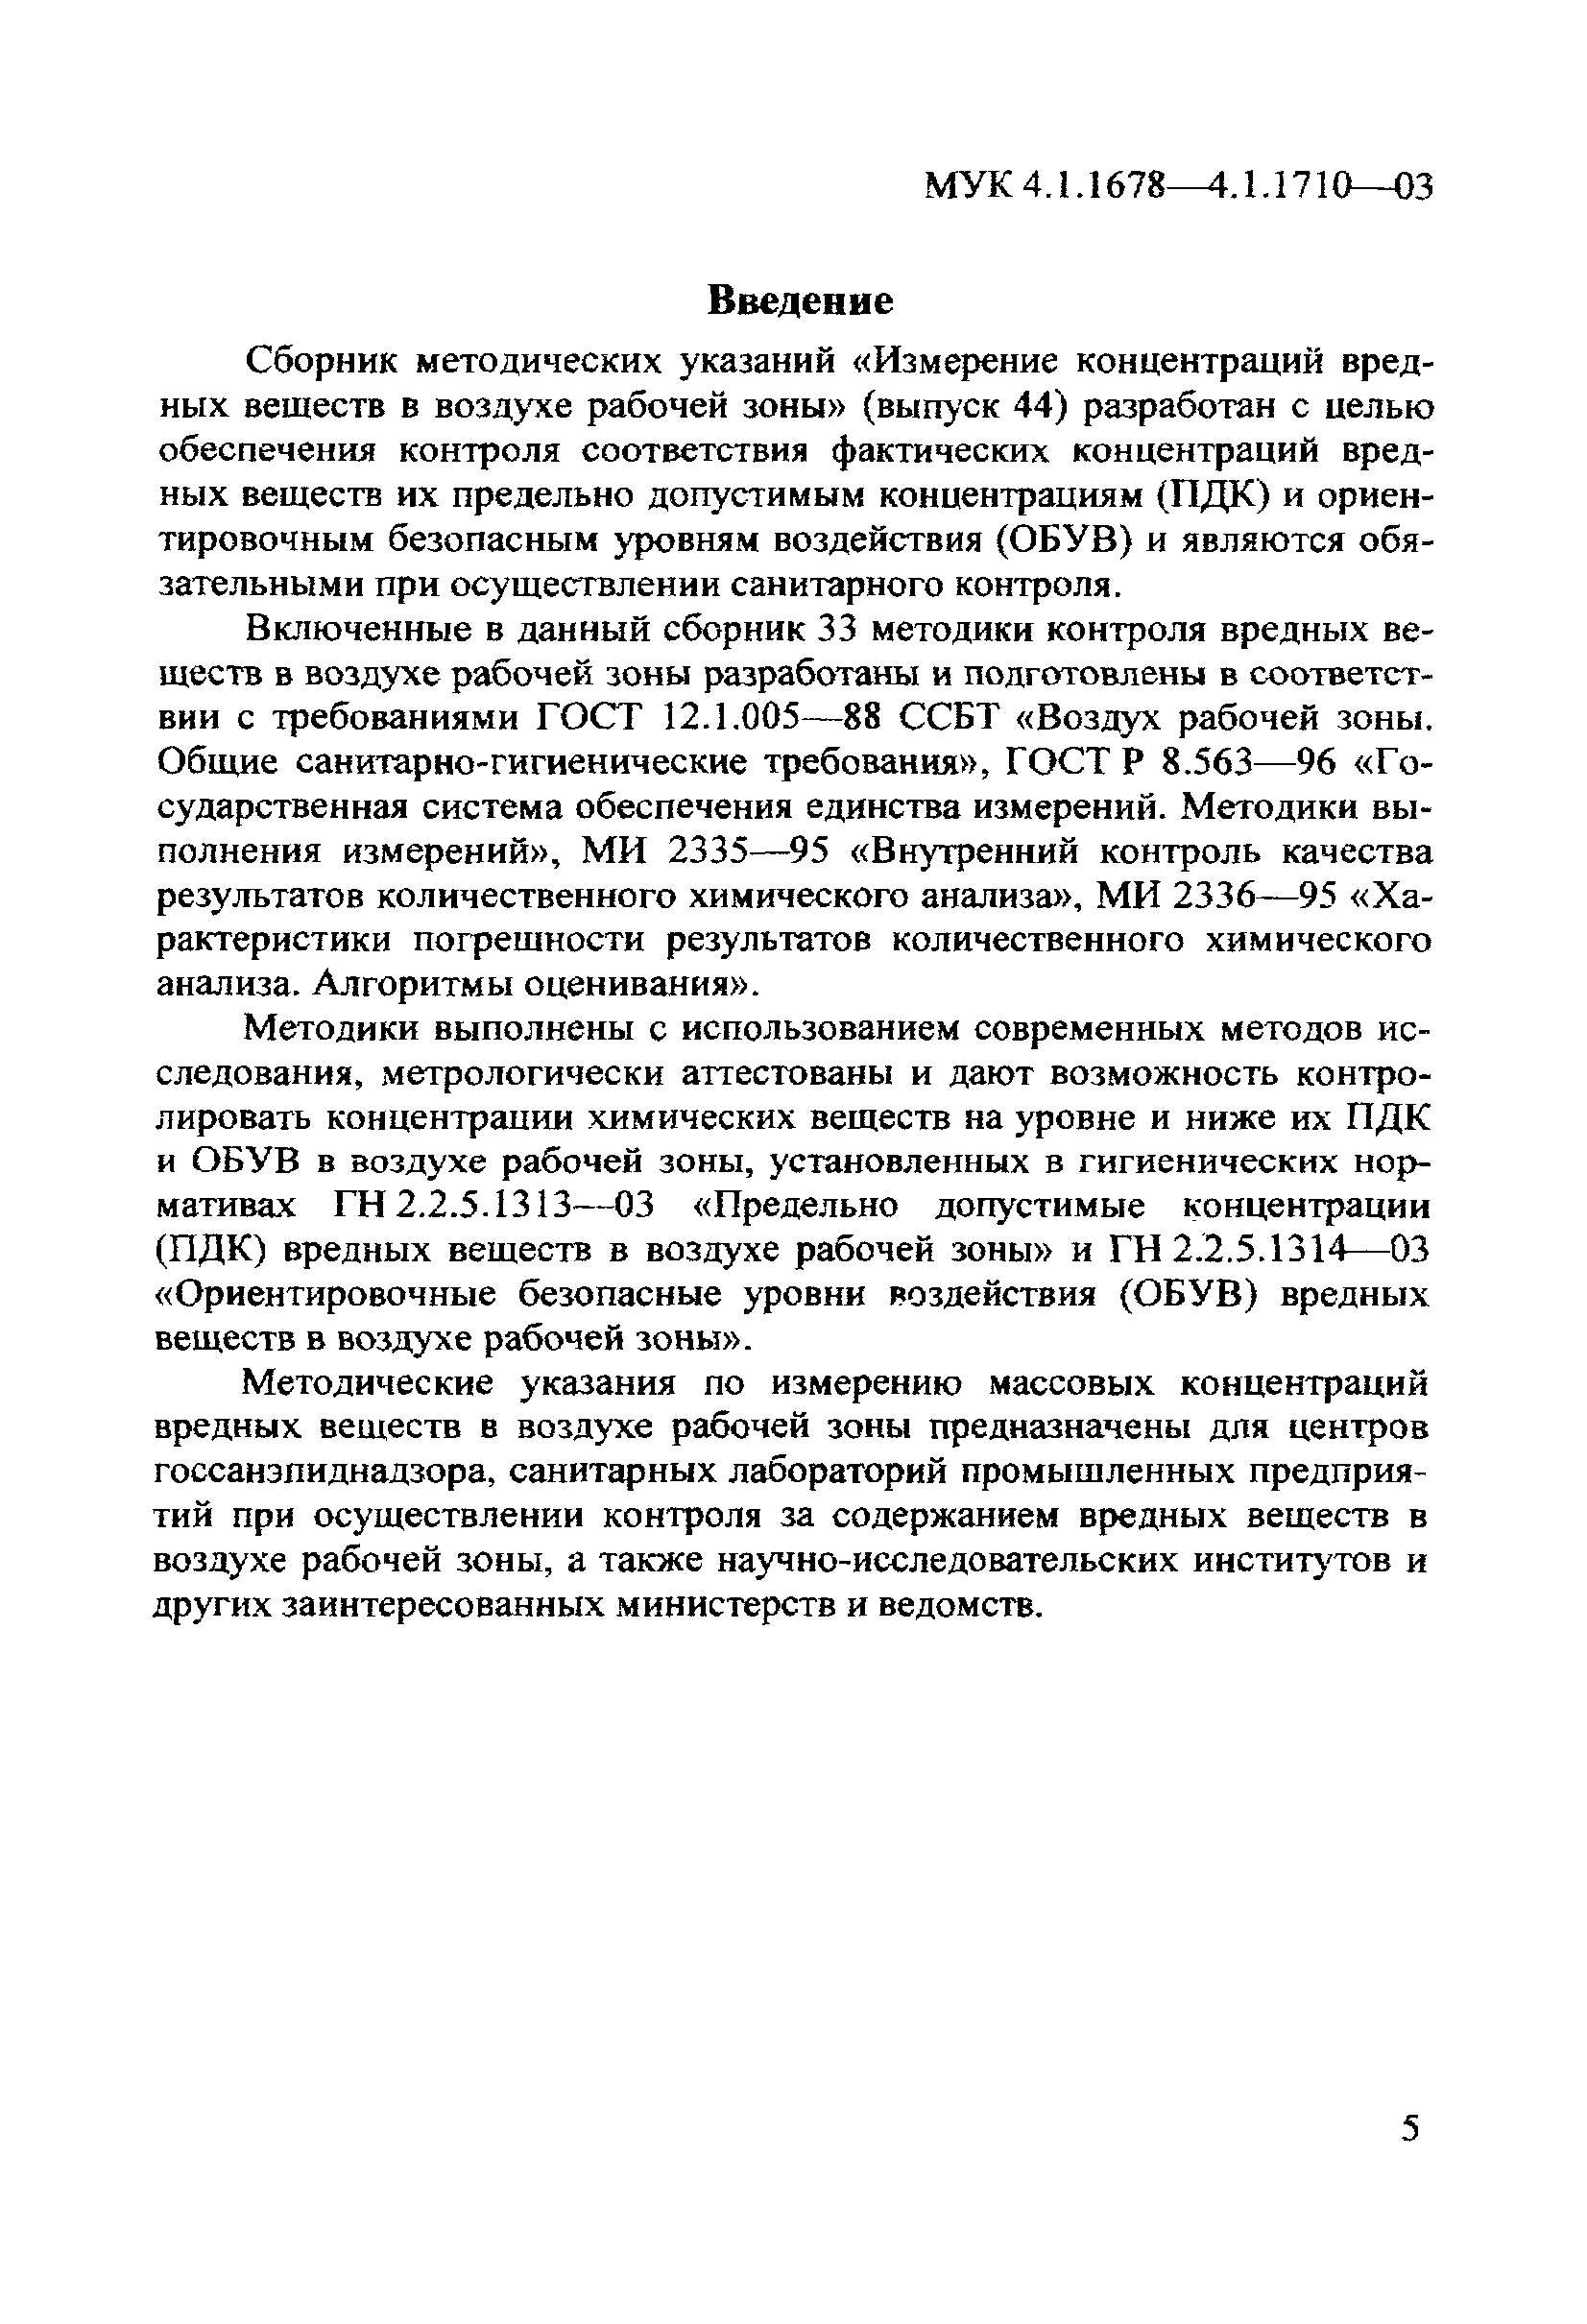 МУК 4.1.1688-03